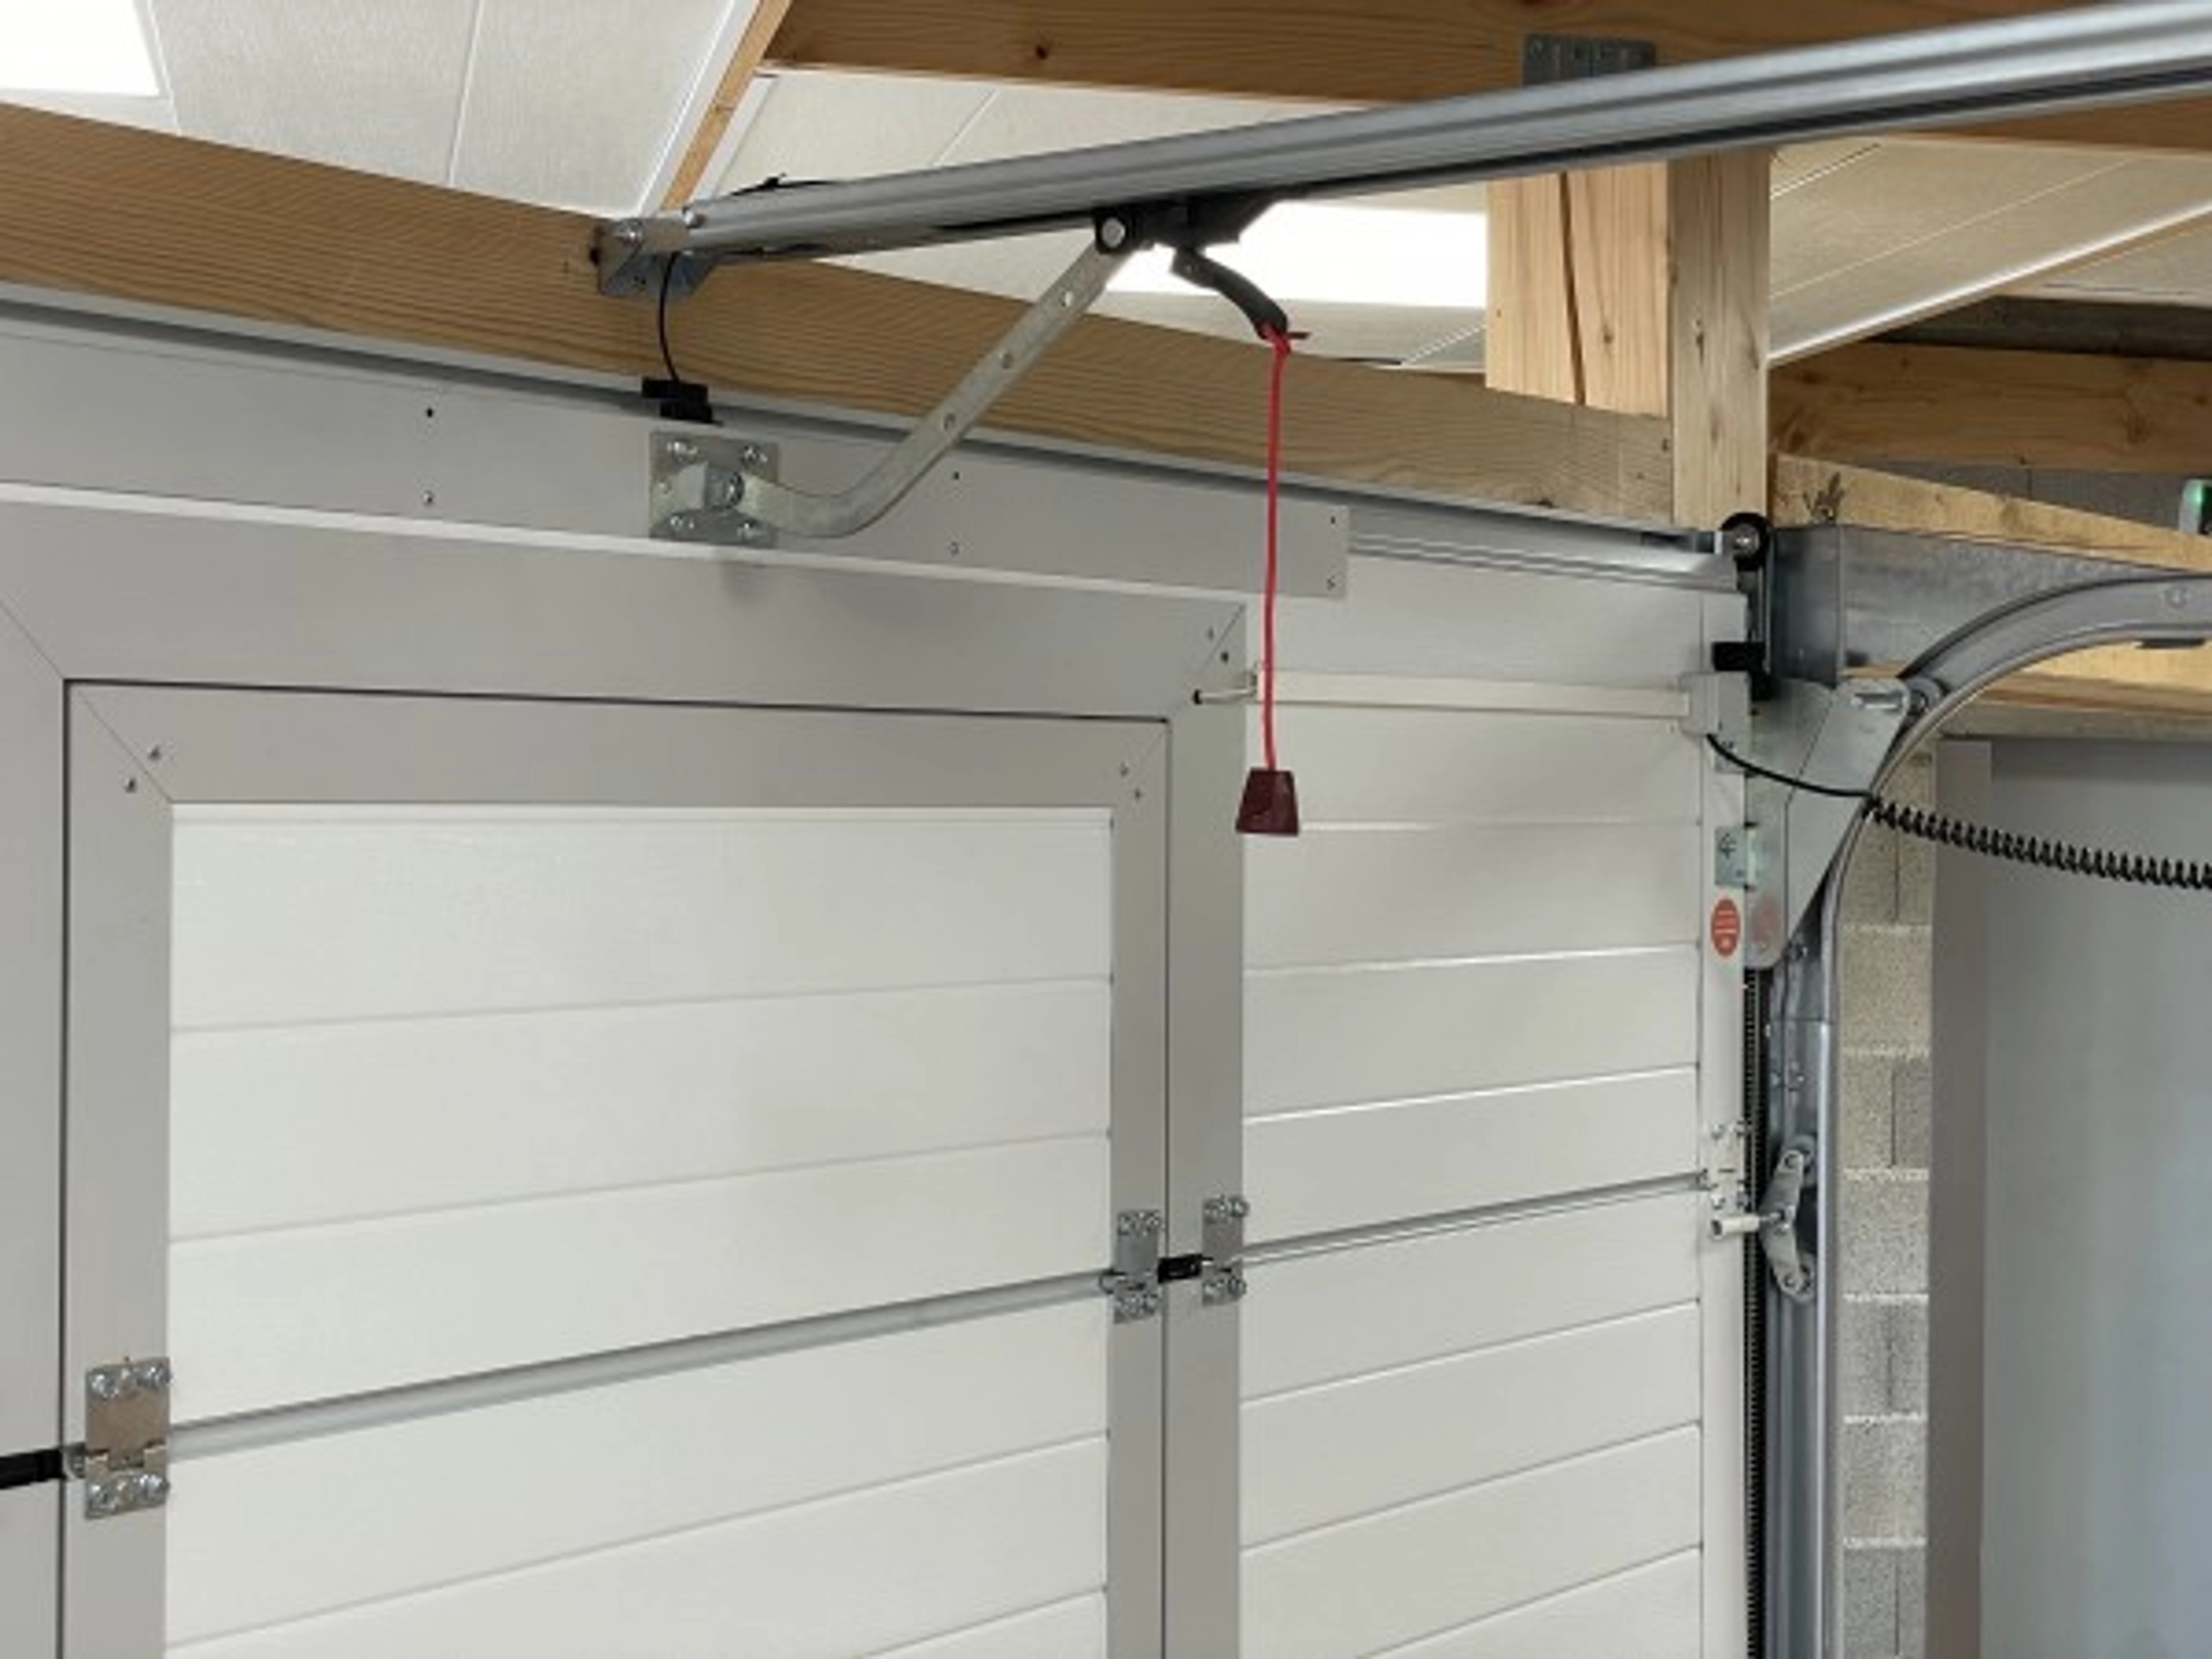 Comment remplacer une porte de garage basculante par une porte sectionnelle ?